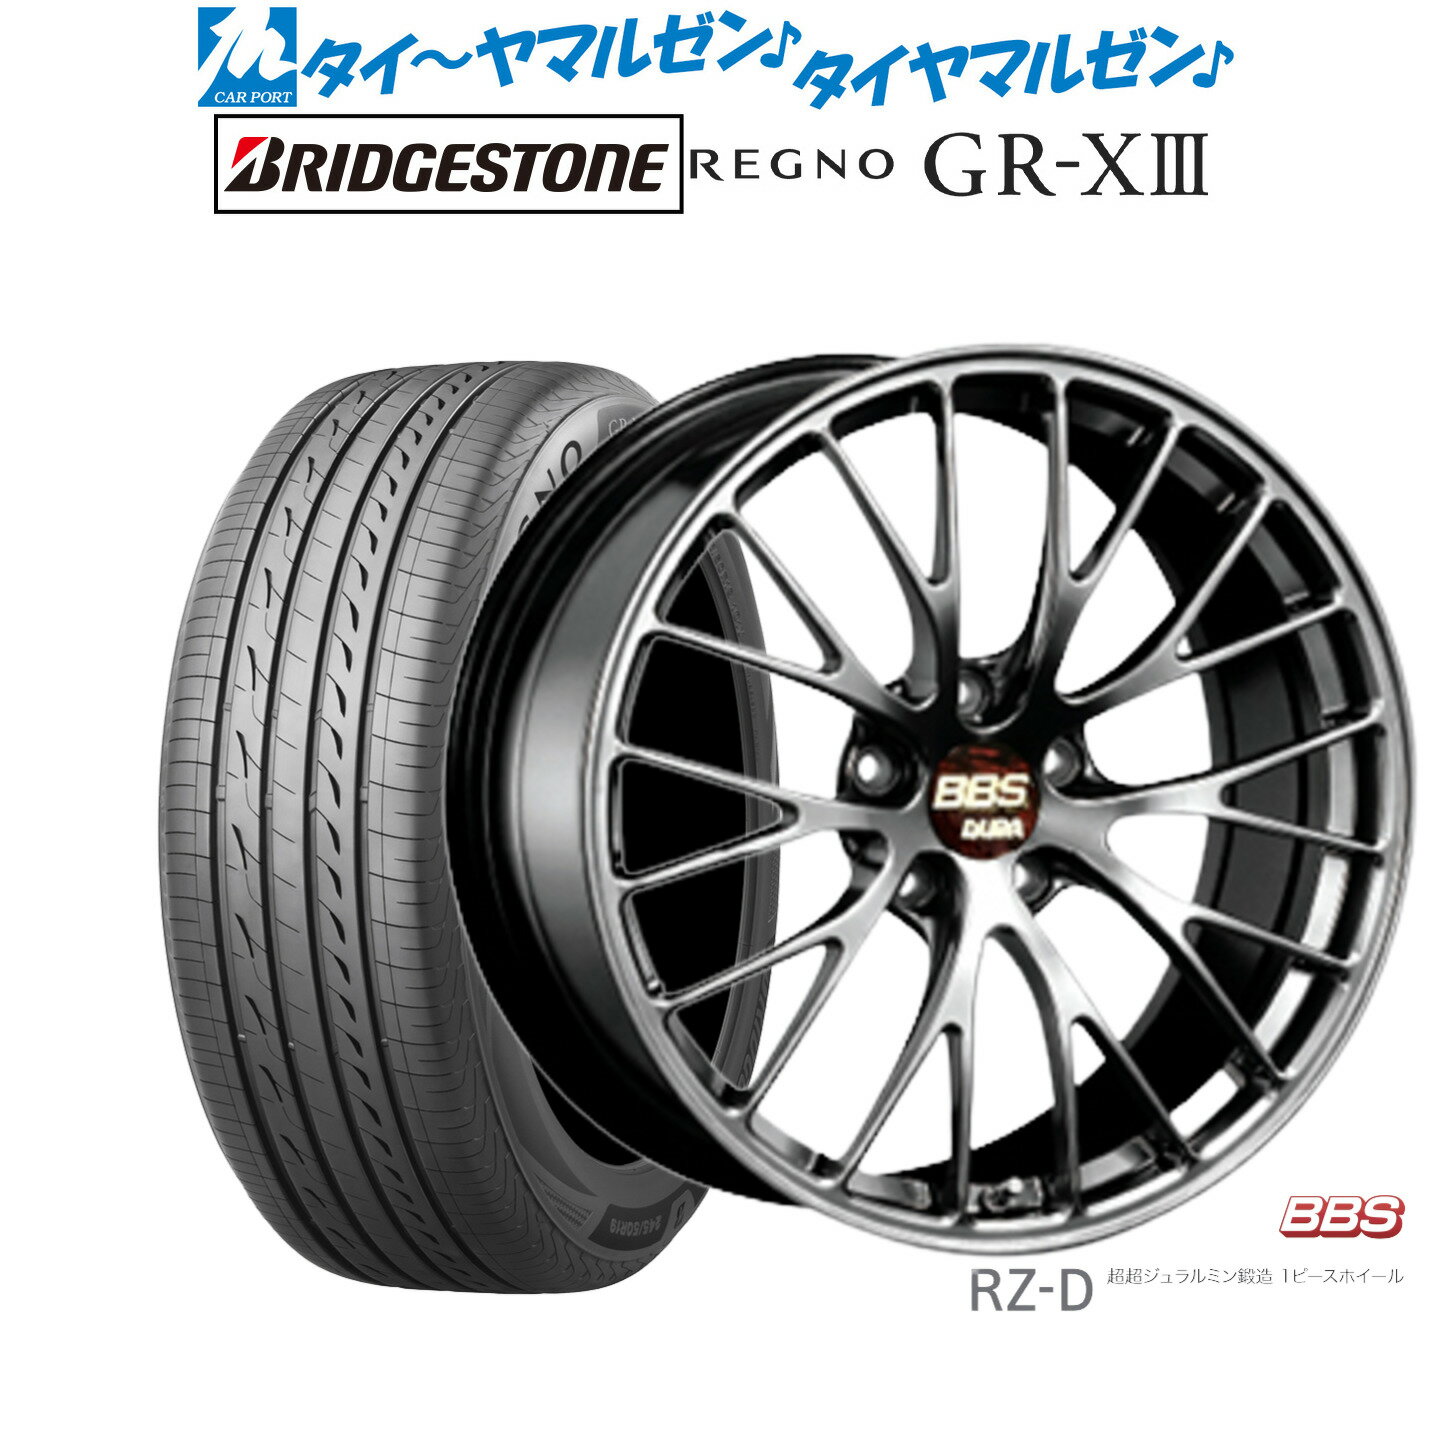 [5/9～15]割引クーポン配布新品 サマータイヤ ホイール4本セットBBS JAPAN RZ-D20インチ 8.5Jブリヂストン REGNO レグノ GR-XIII(GR-X3)245/40R20